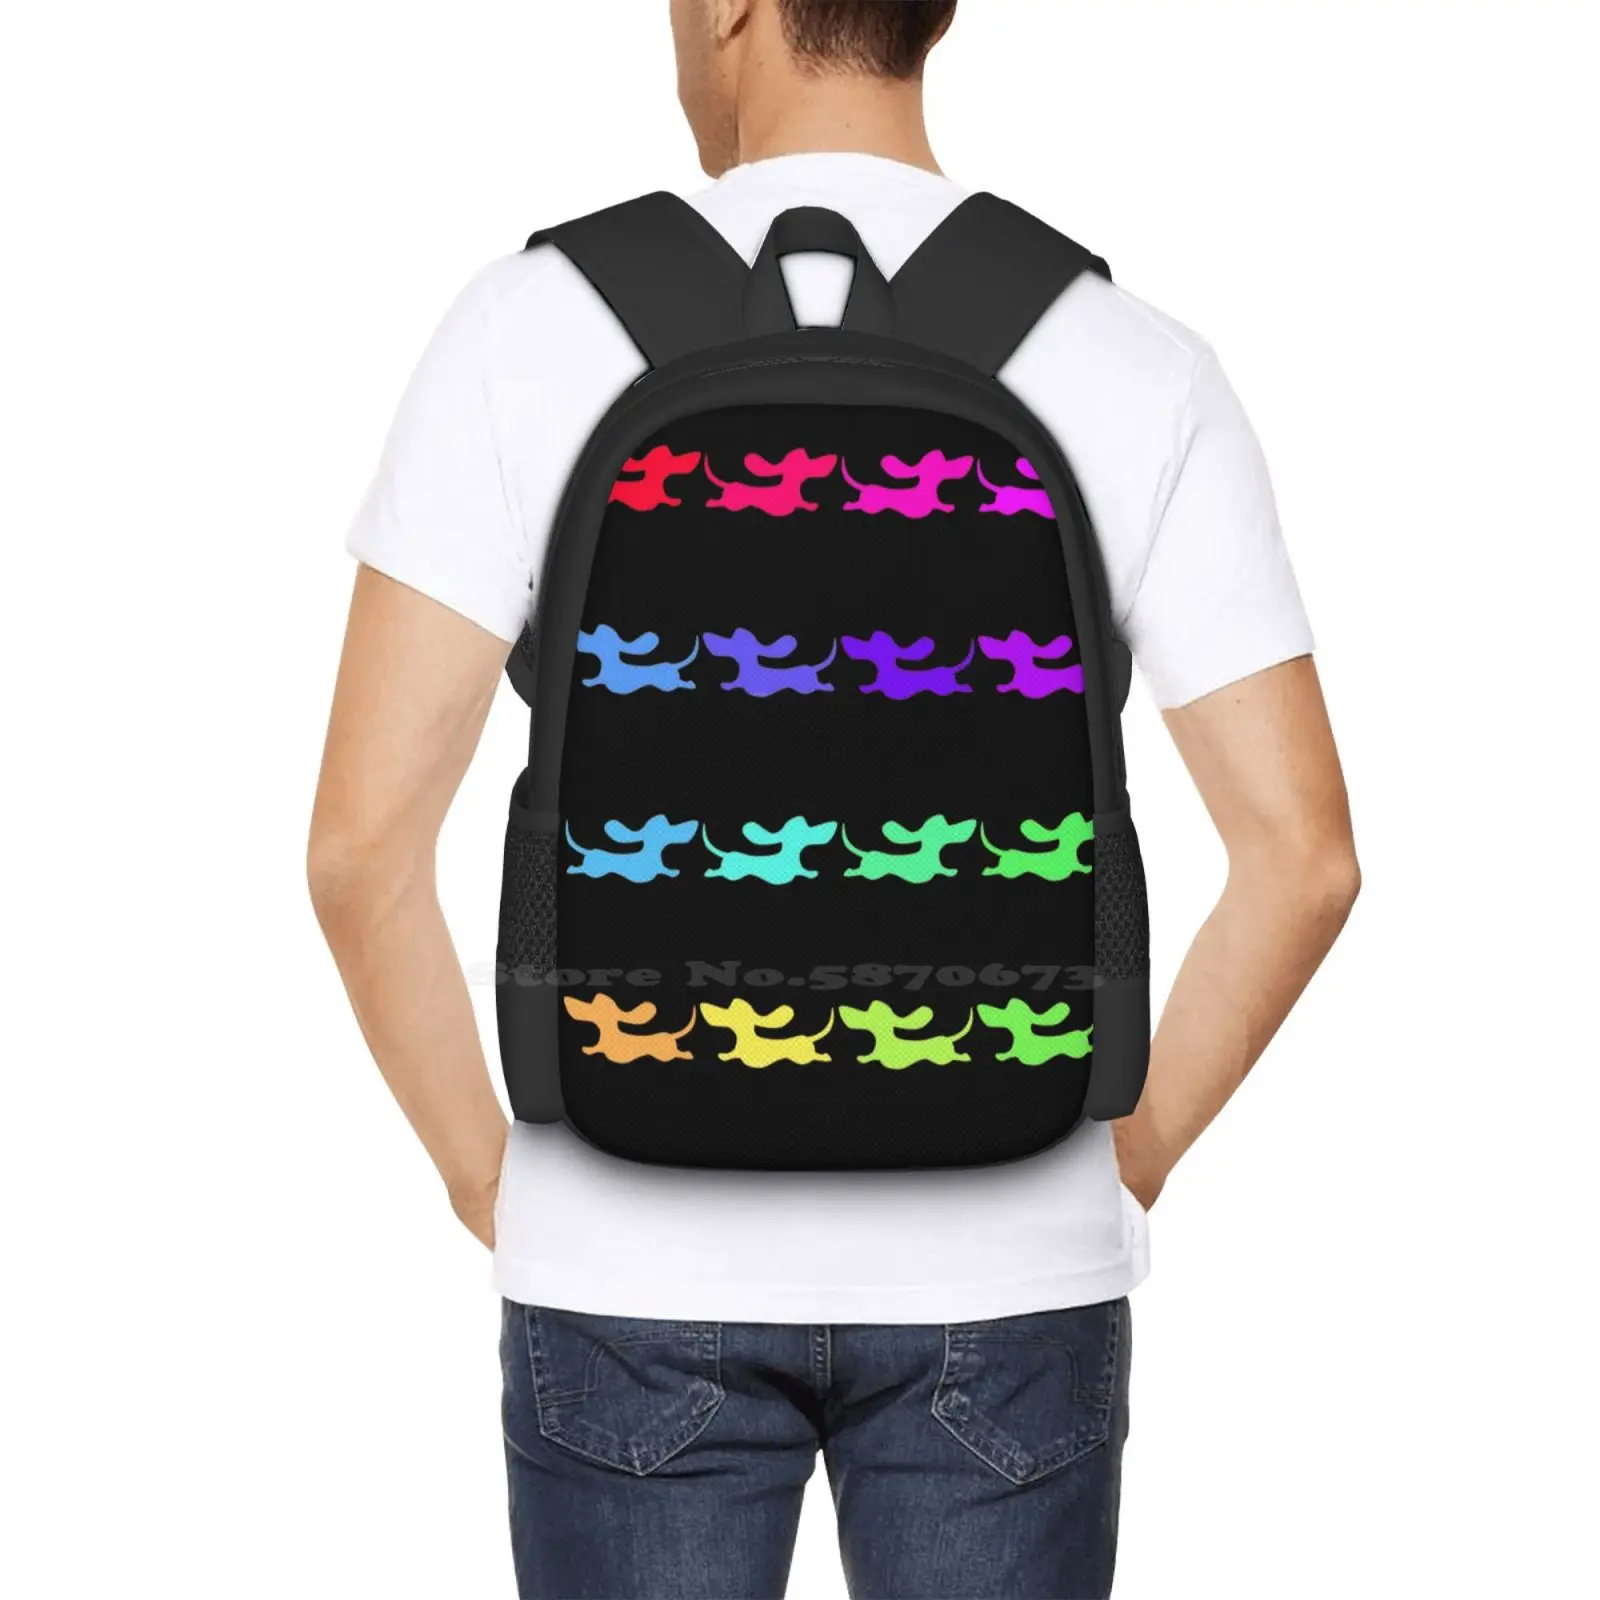 M?Ykkyloikka! Сумка с рисунком Студенческий рюкзак Dachshund Doxie Красочные Радужные Волдоги 5